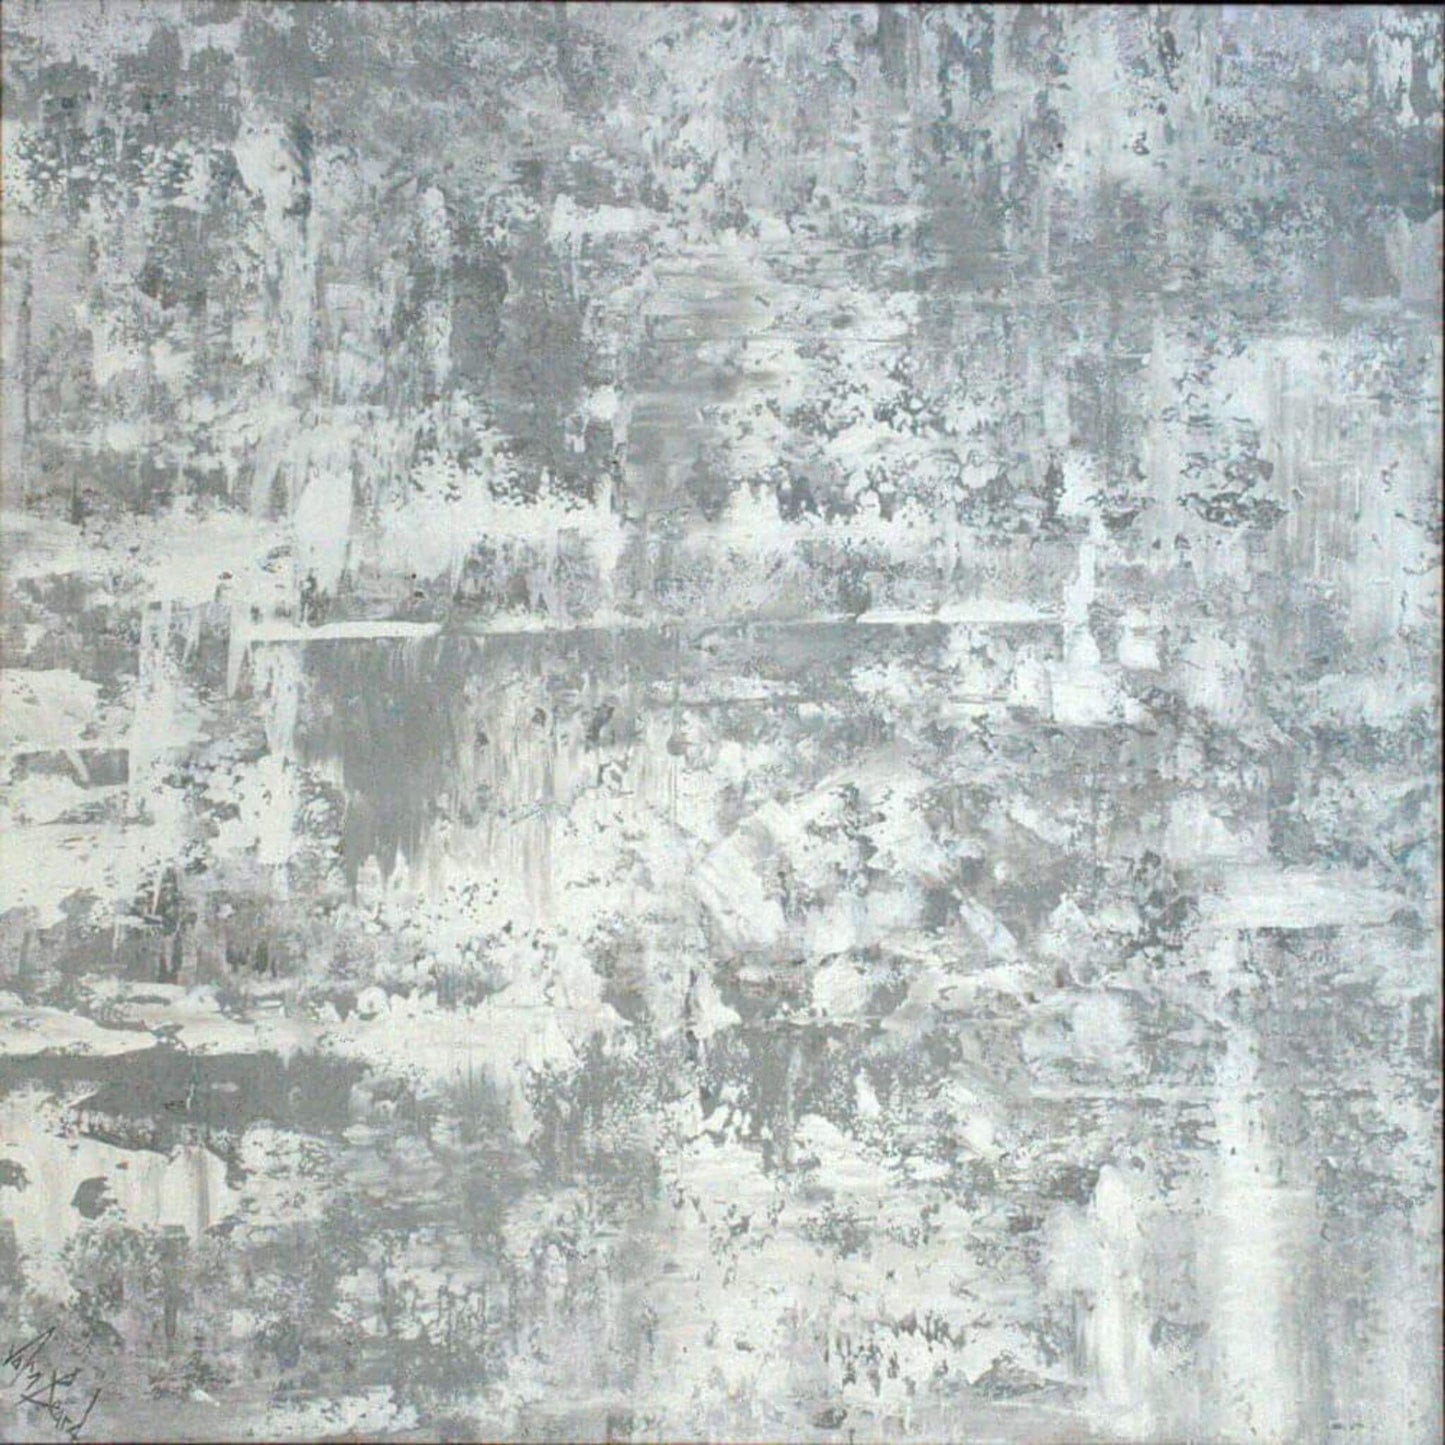 Abstract Art White Rain John Beard Collection